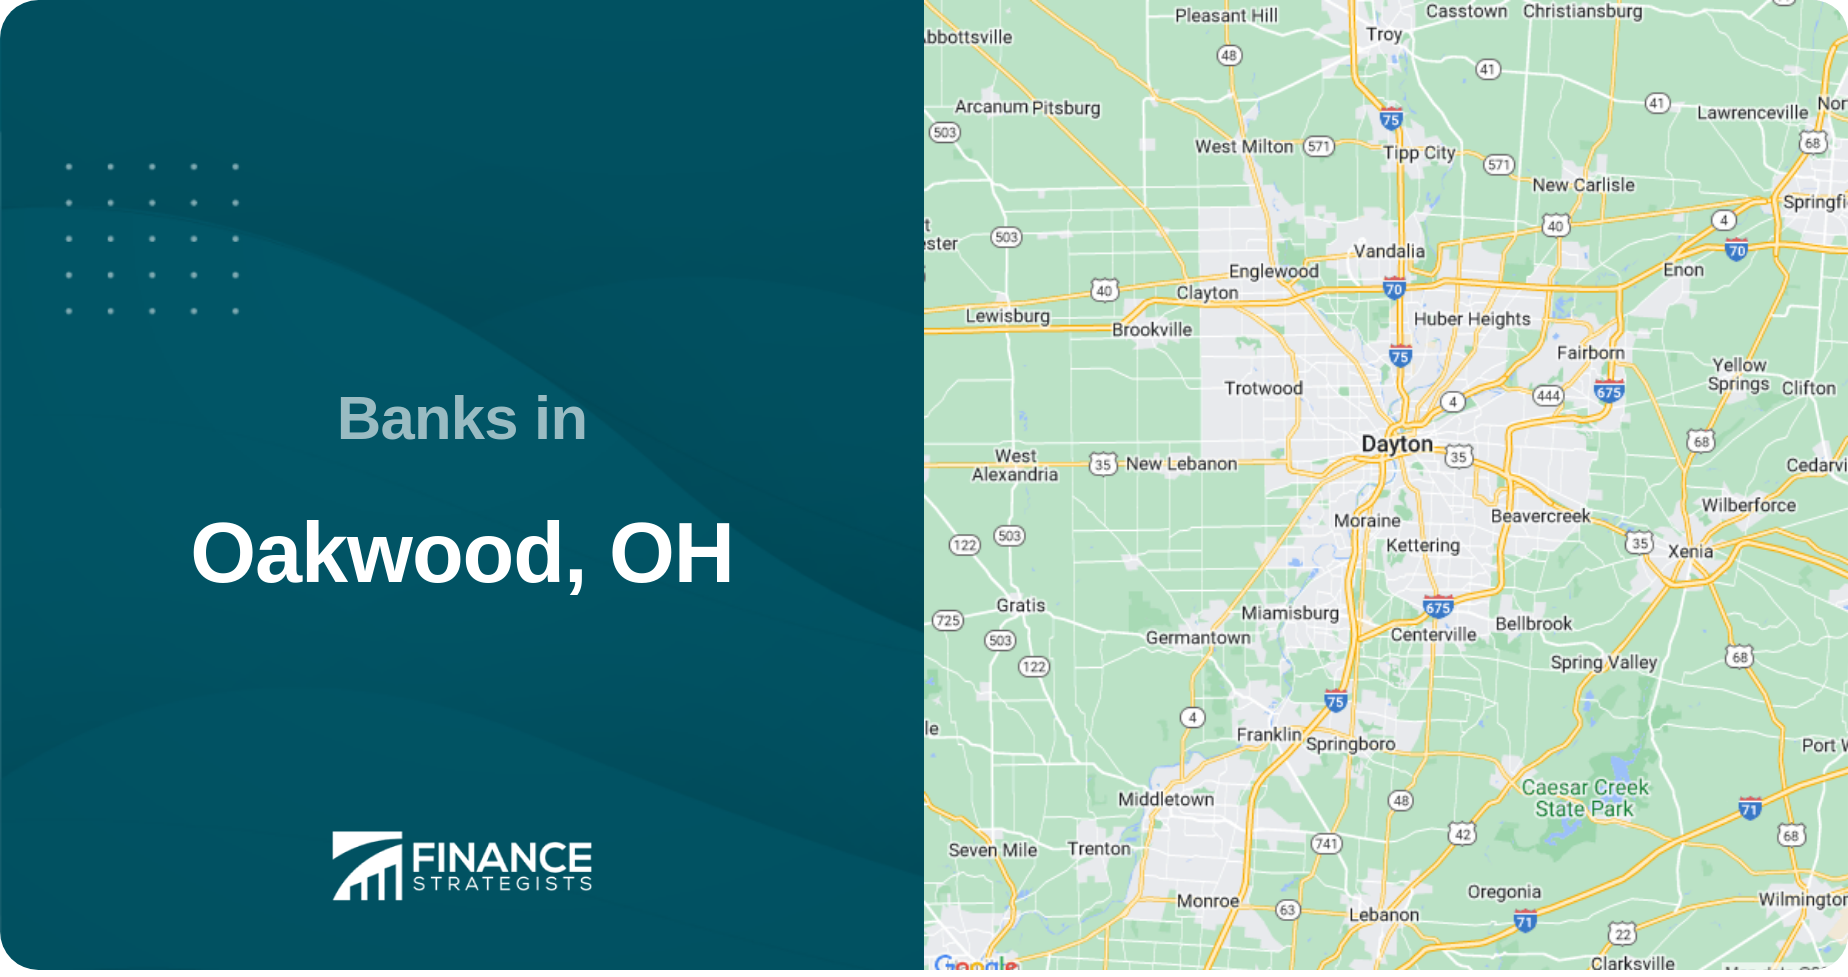 Banks in Oakwood, OH